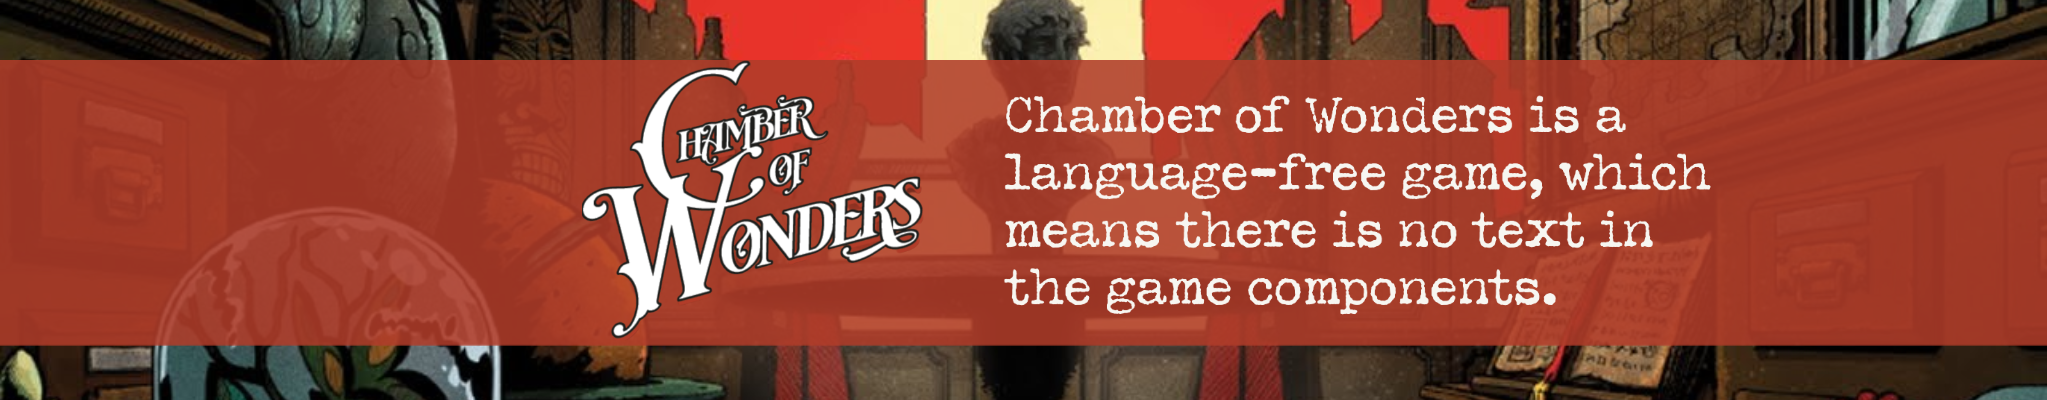 Chamber of Wonders-1